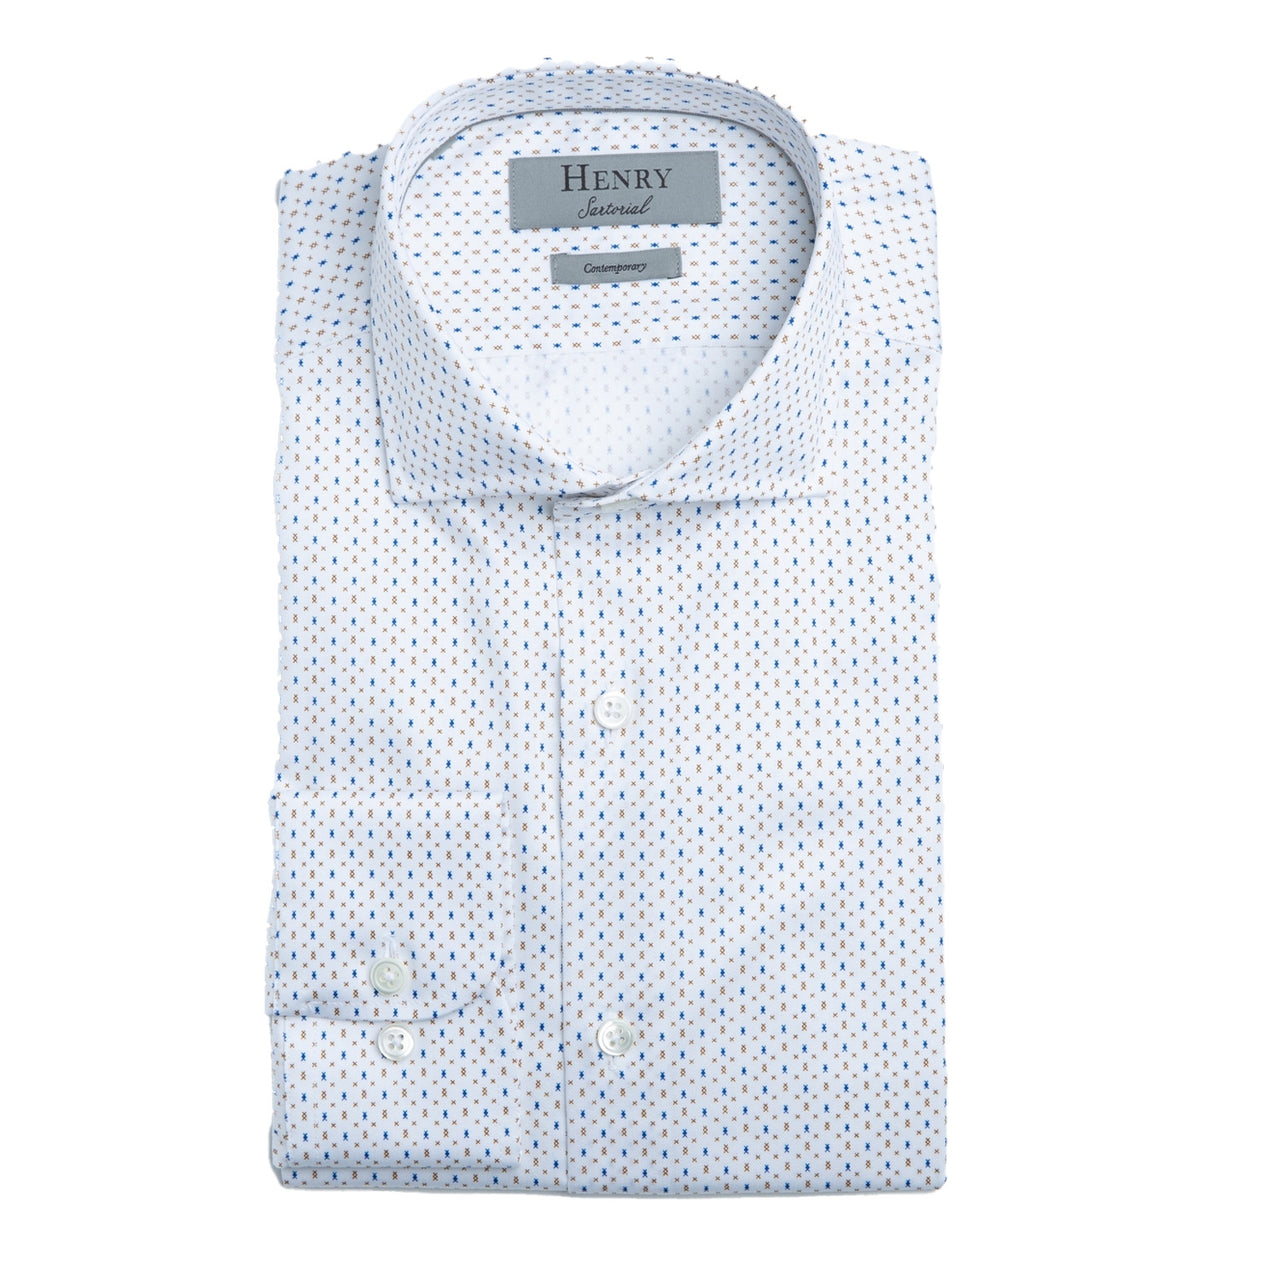 Henry Sartorial Diamond Print Shirt White/Tan